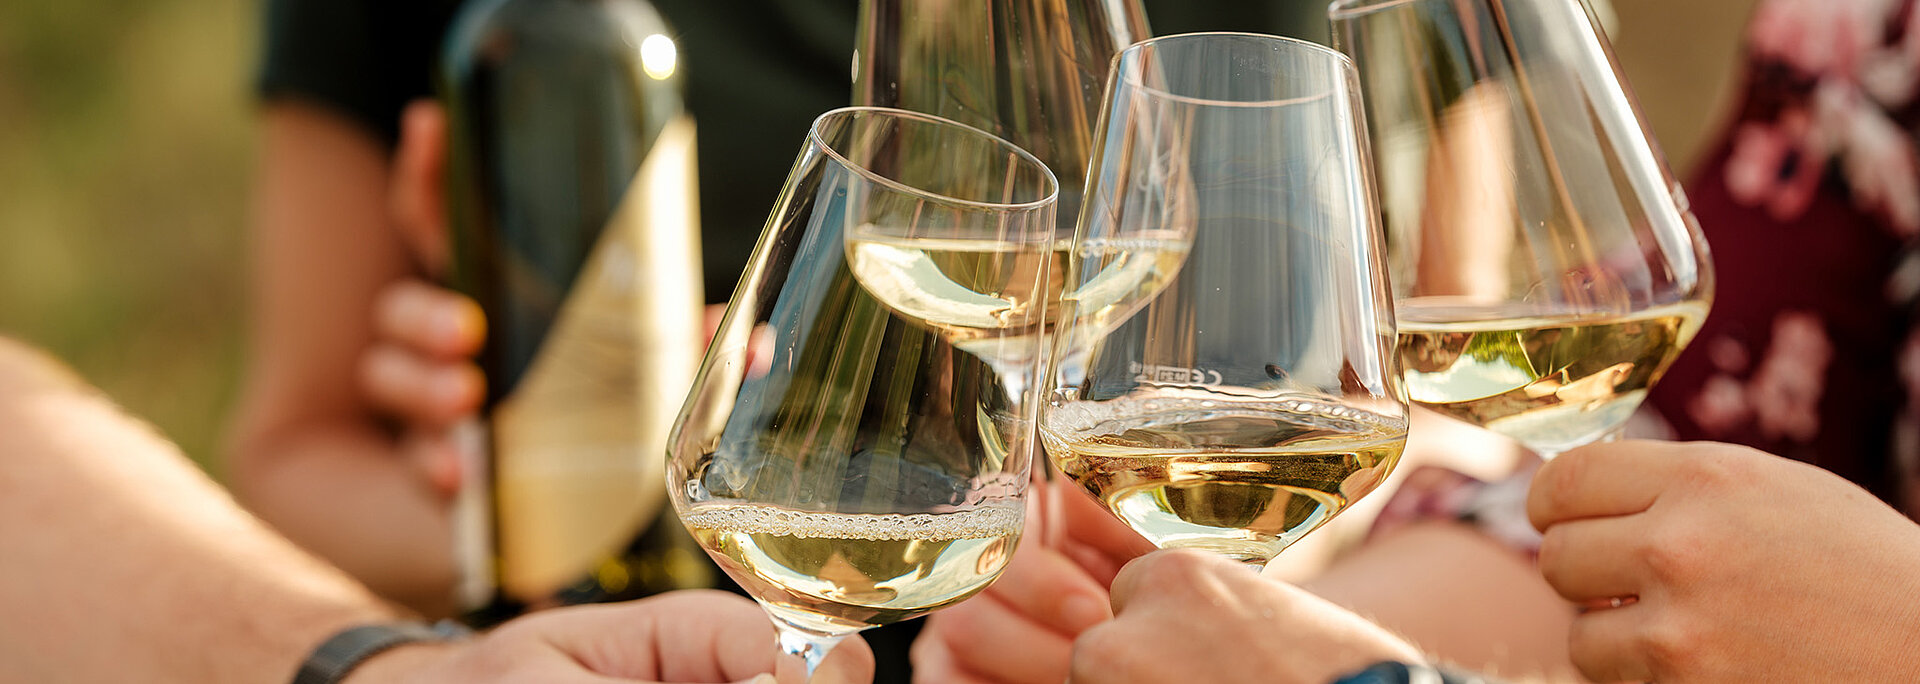 Gläser mit Weißweinen stoßen zusammen. Im Hintergrund sieht man eine Flasche Neustifter Wein aus der Exklusiv Linie.